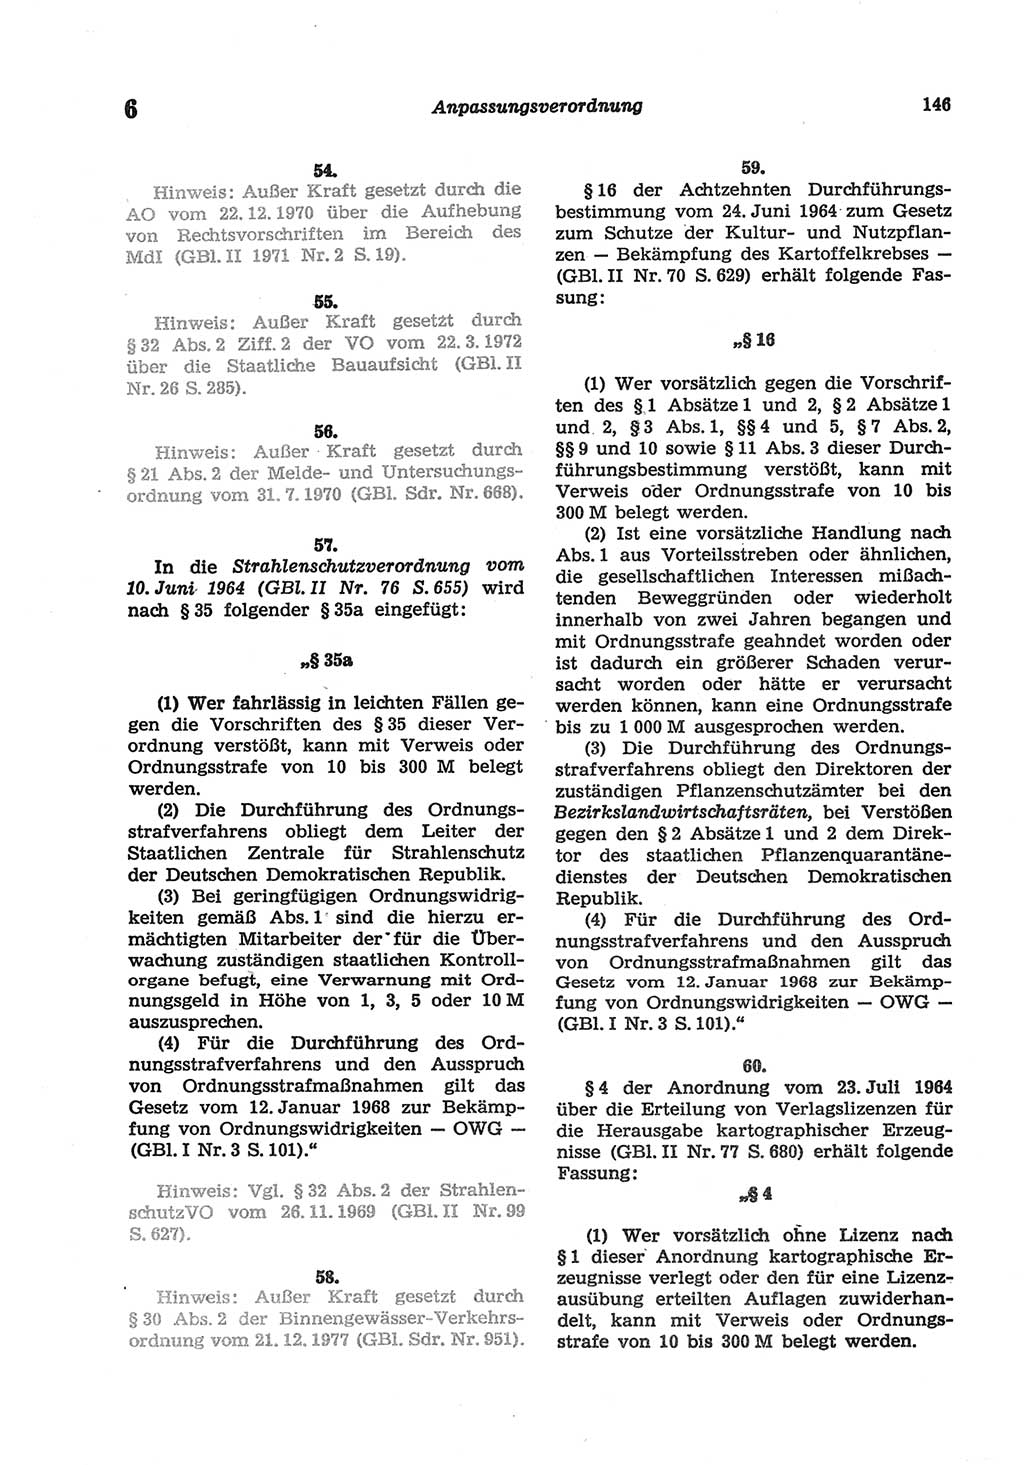 Strafgesetzbuch (StGB) der Deutschen Demokratischen Republik (DDR) und angrenzende Gesetze und Bestimmungen 1977, Seite 146 (StGB DDR Ges. Best. 1977, S. 146)